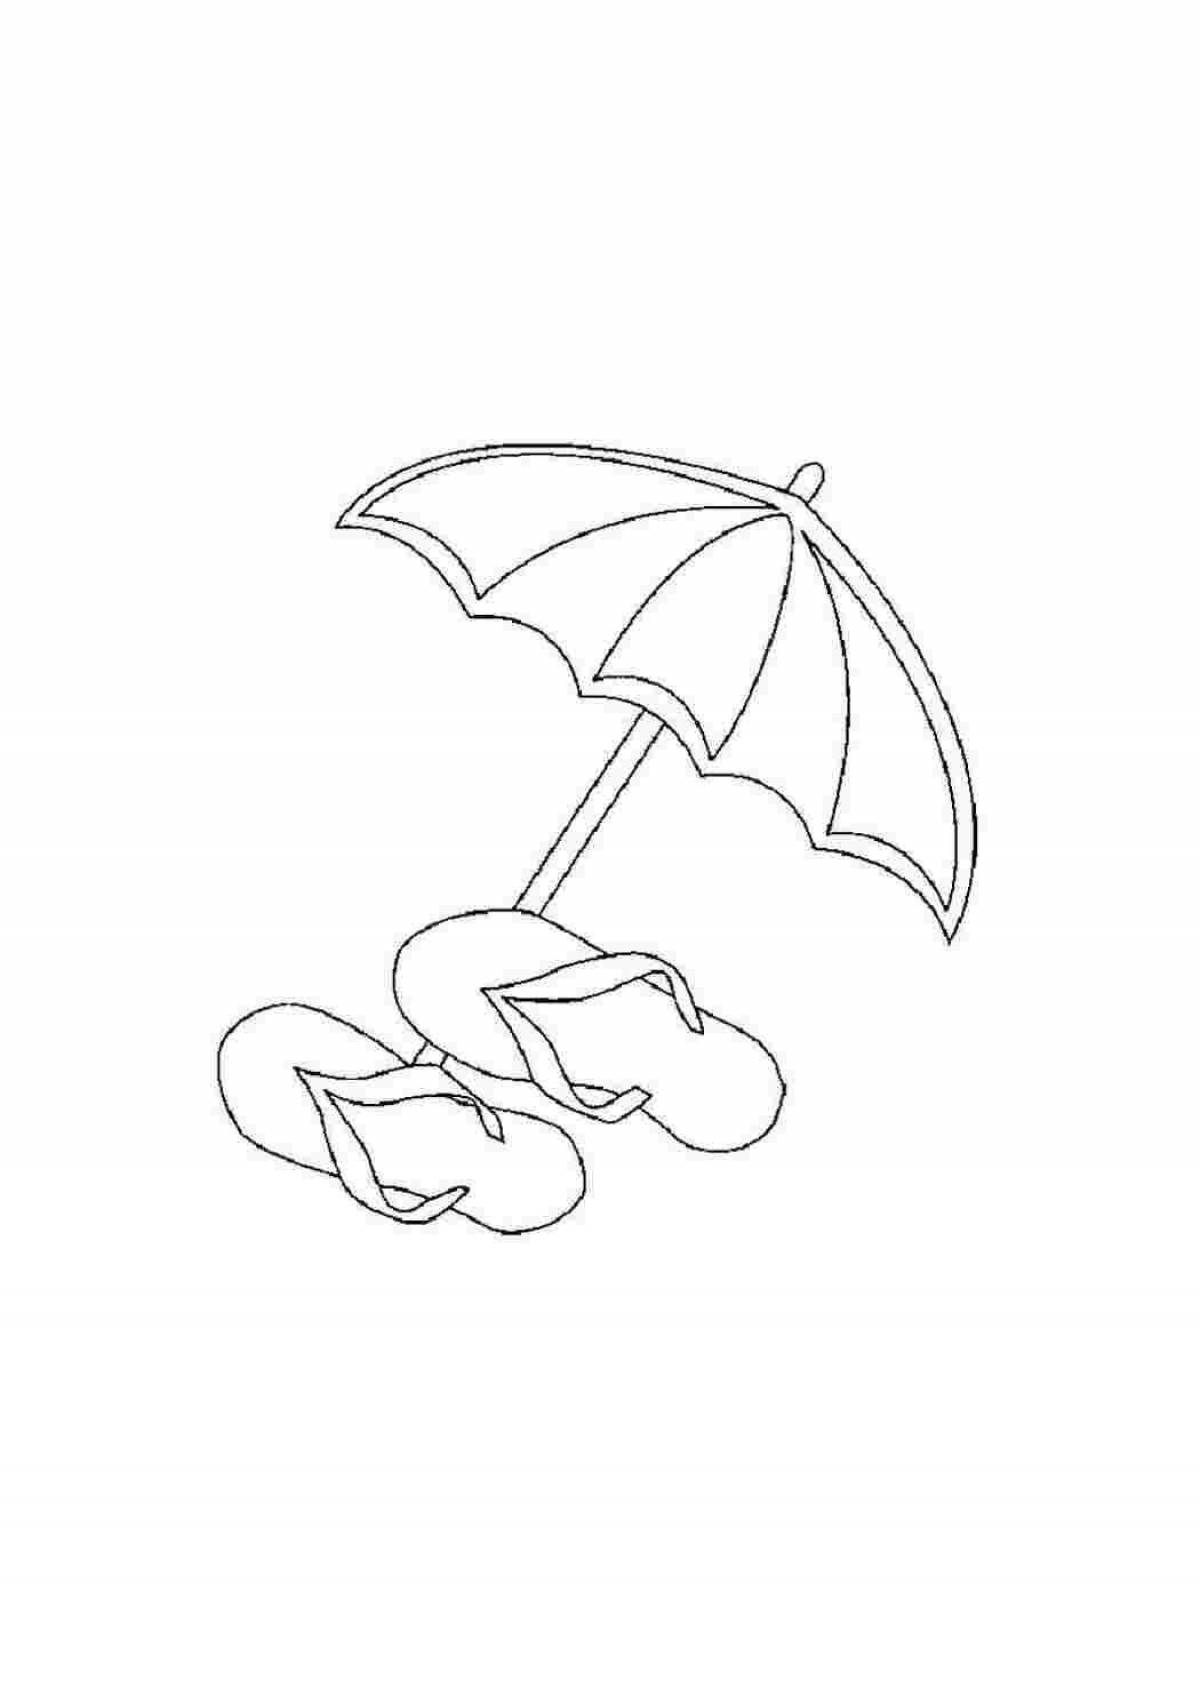 Цветная раскраска зонтика для детей 4-5 лет